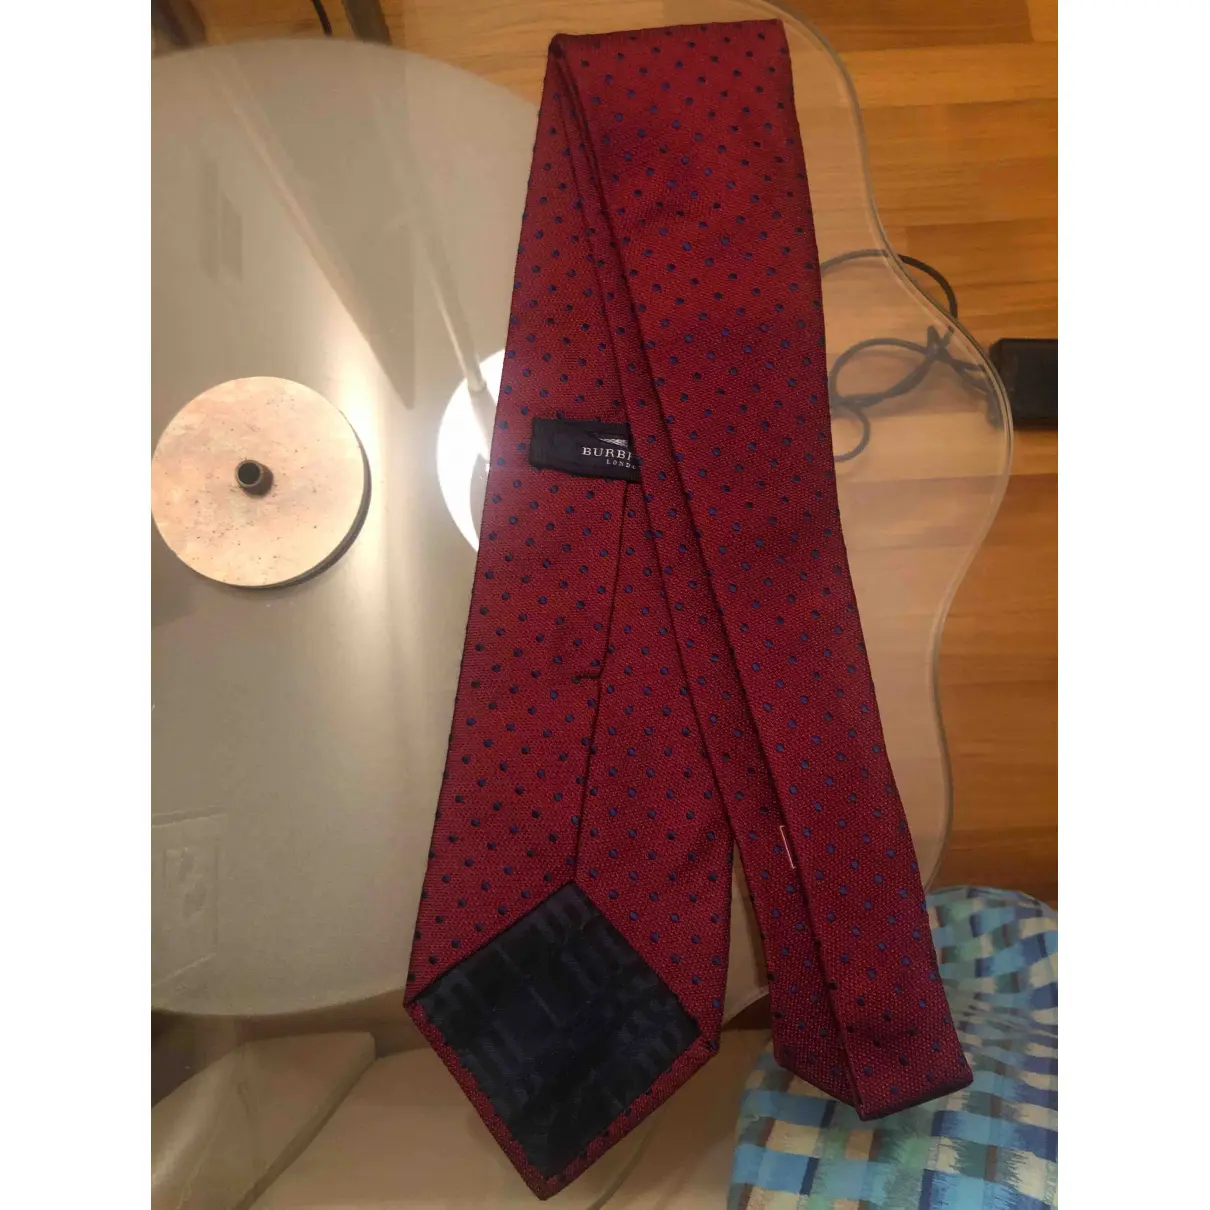 Buy Burberry Silk tie online